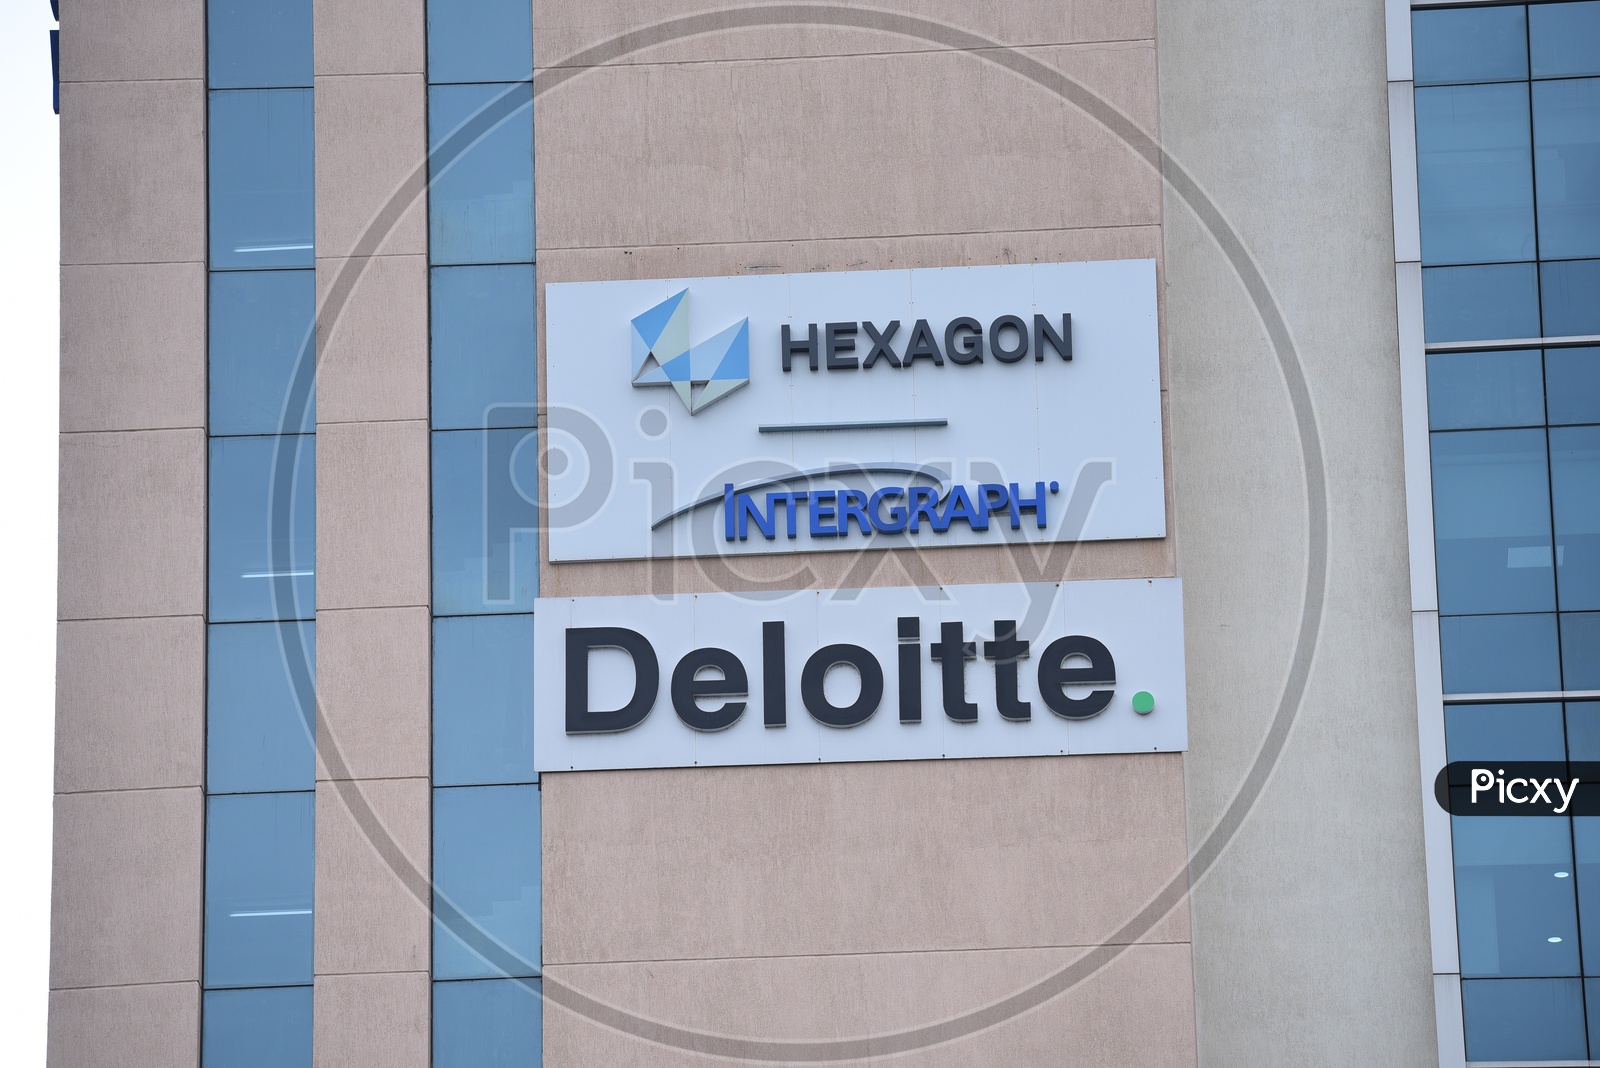 Hexagon , INTERGRAPH  and Deloitte Company Sign Boards